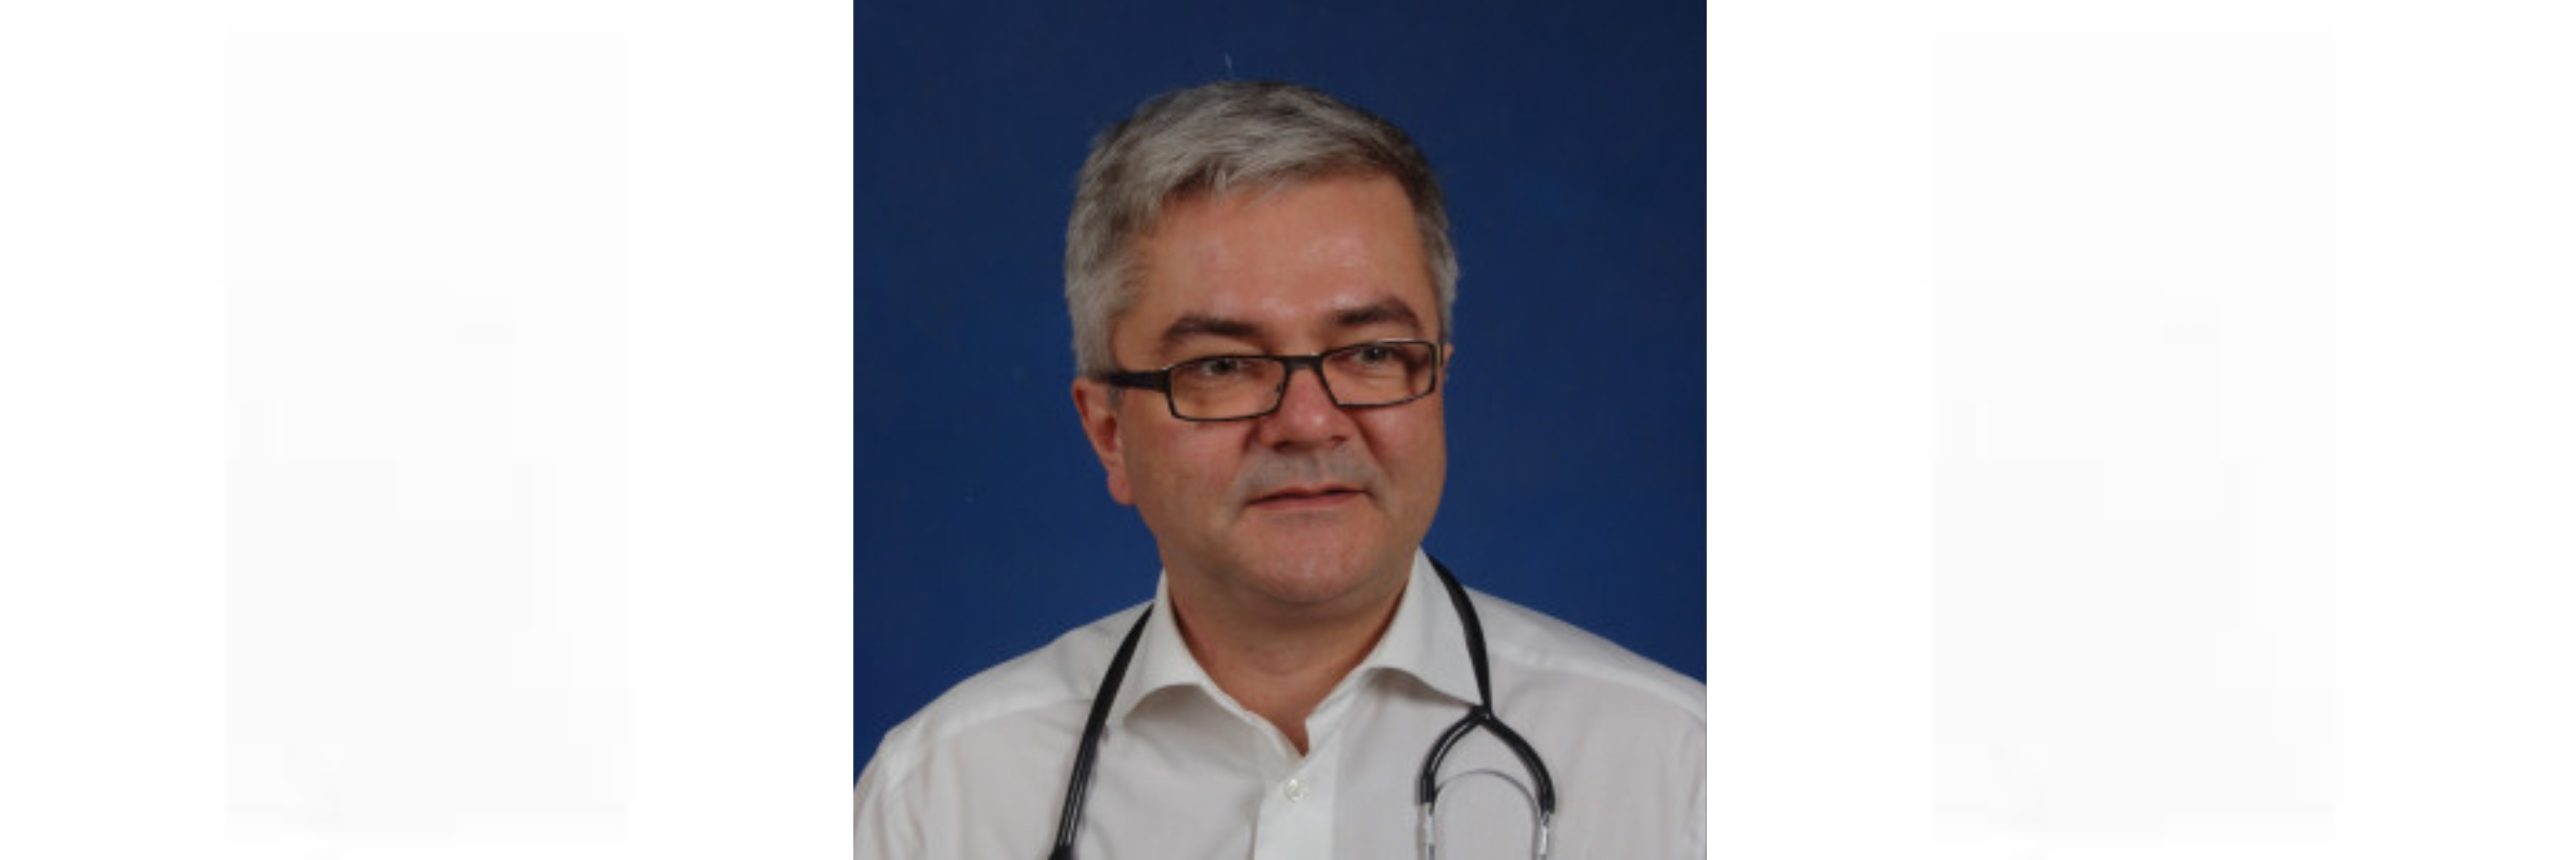 Ο Dr Andrzej Fal, καθηγητής στο Department of Allergy, Pulmonary Medicine and Internal Diseases στο National Institute of Medicine of Interior Warsaw, στην Πολωνία